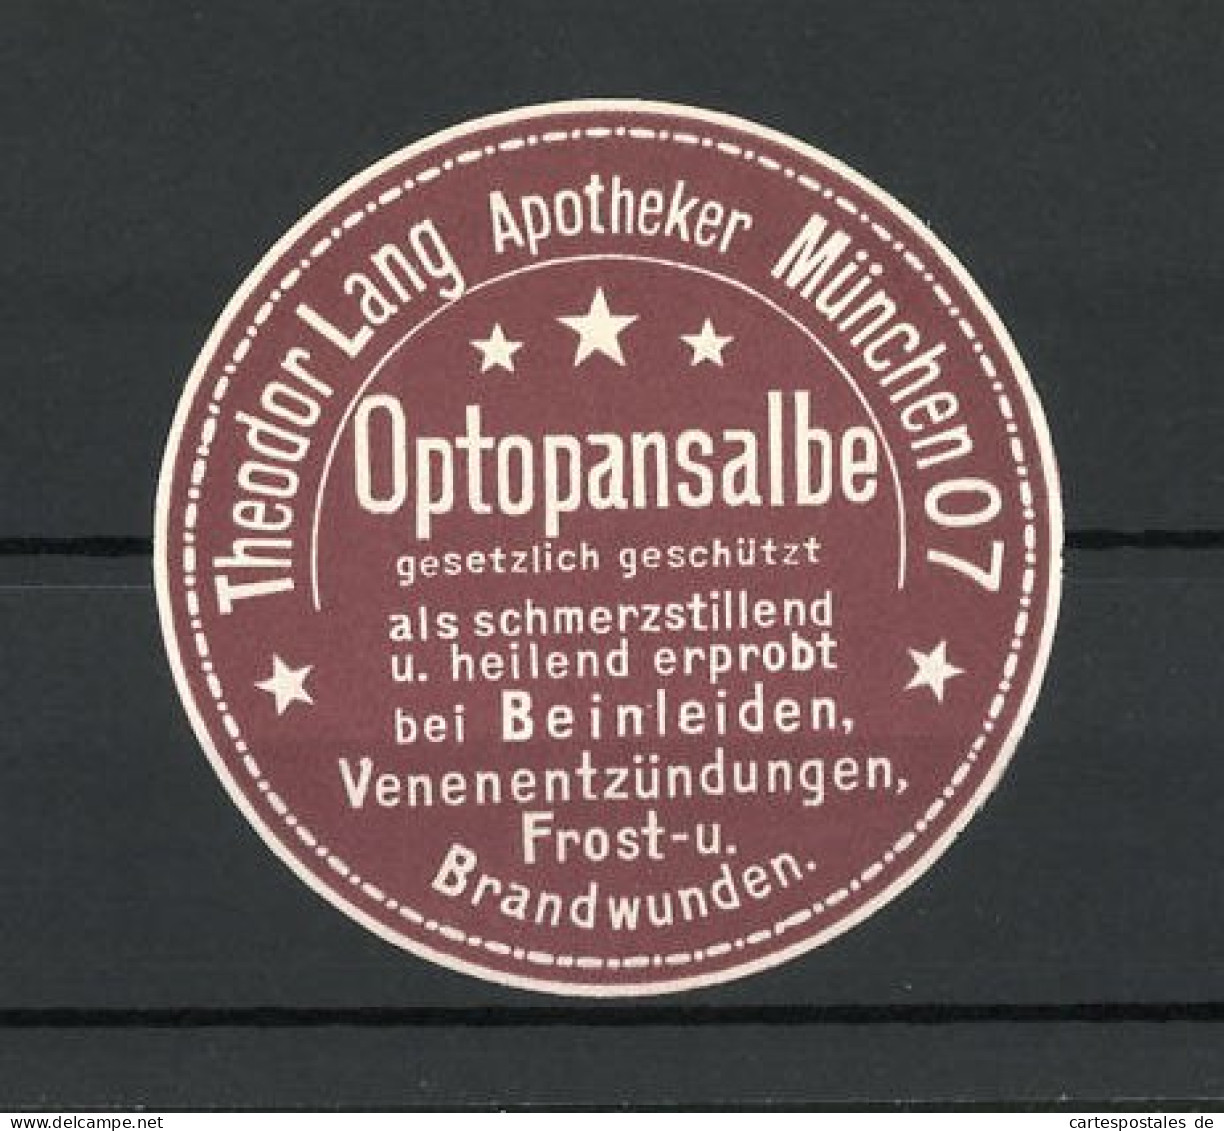 Reklamemarke Optopansalbe Von Apotheker Theodor Lang, München  - Erinnofilia